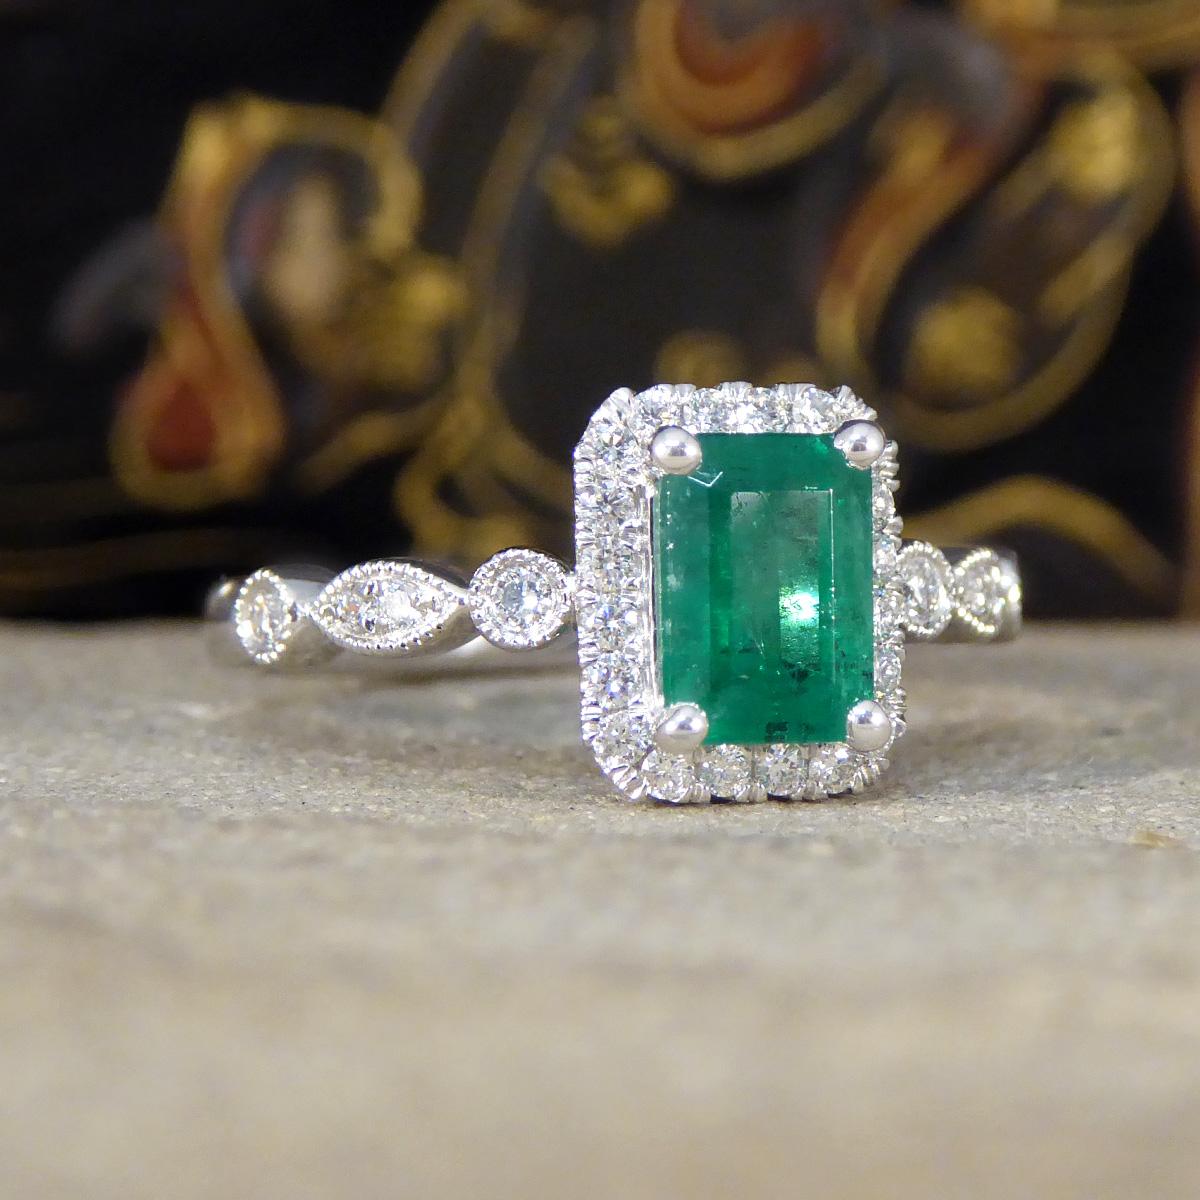 Ein fesselnder Ring mit 1,05ct Smaragdschliff und Diamantcluster. Dieser Ring ist eine wahre Verkörperung von Raffinesse und Anmut. Dieser Ring ist in Platin gefasst und zeigt in der Mitte einen faszinierenden Smaragd mit den typischen